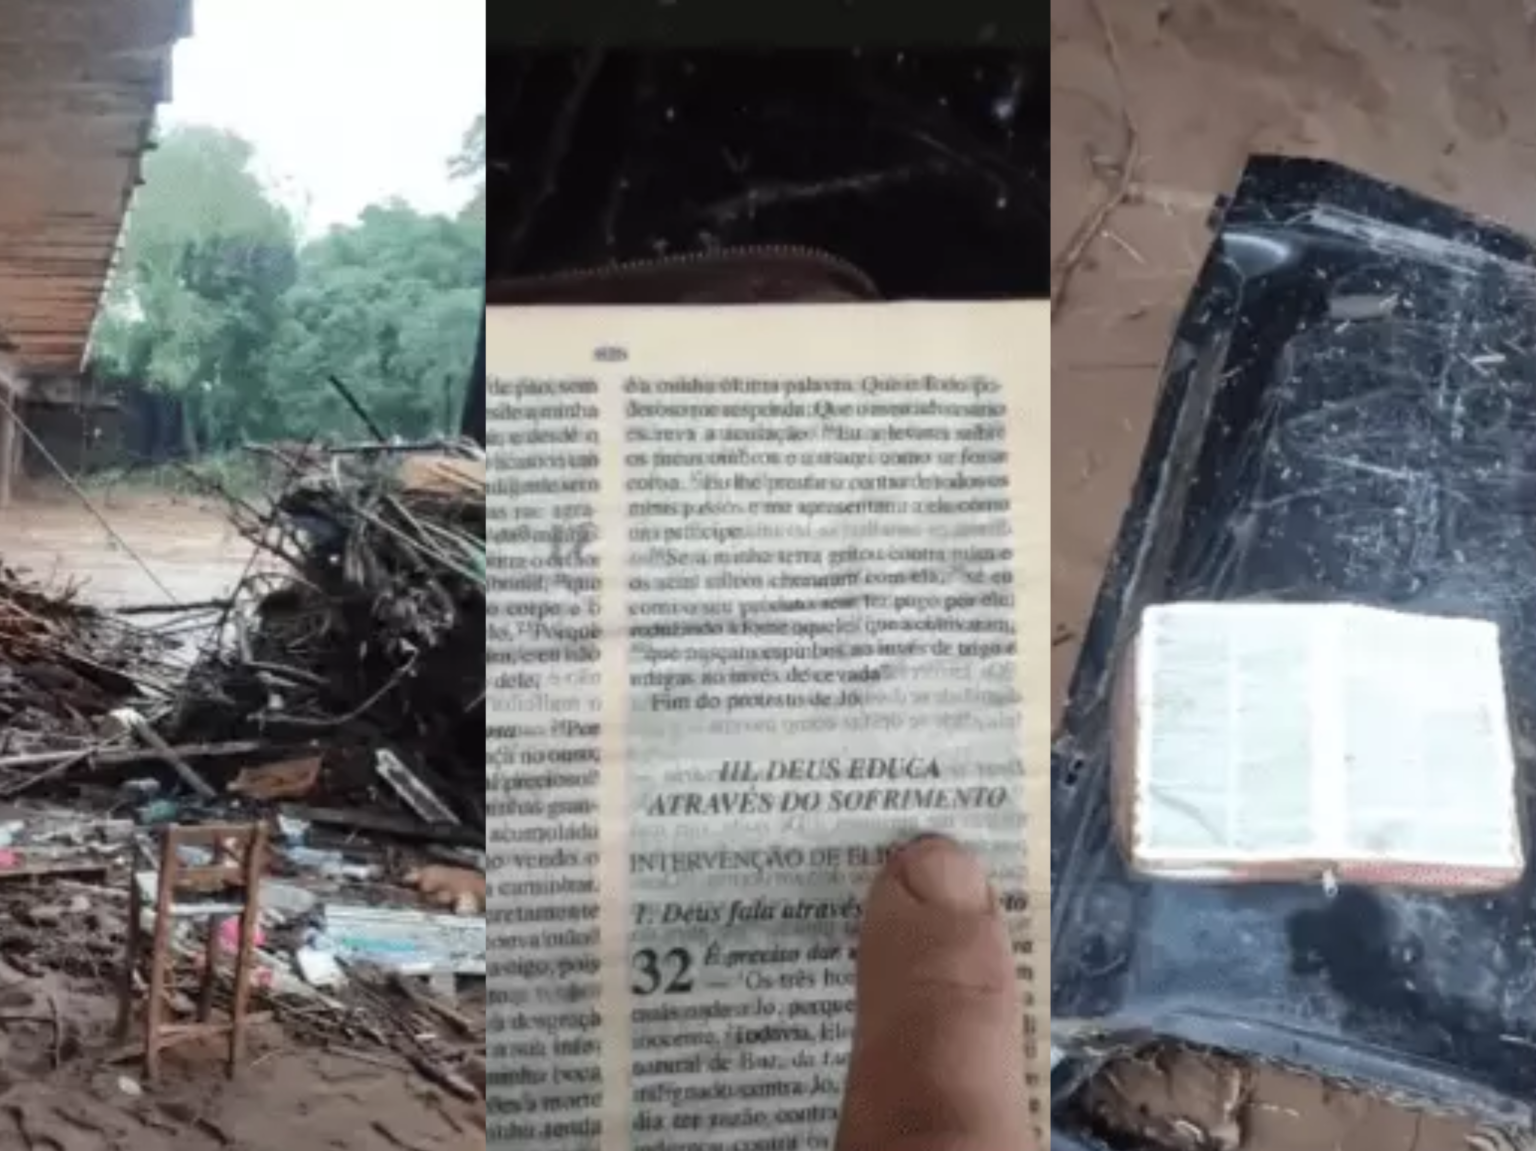 Bíblia é encontrada intacta durante resgate no Rio Grande do Sul